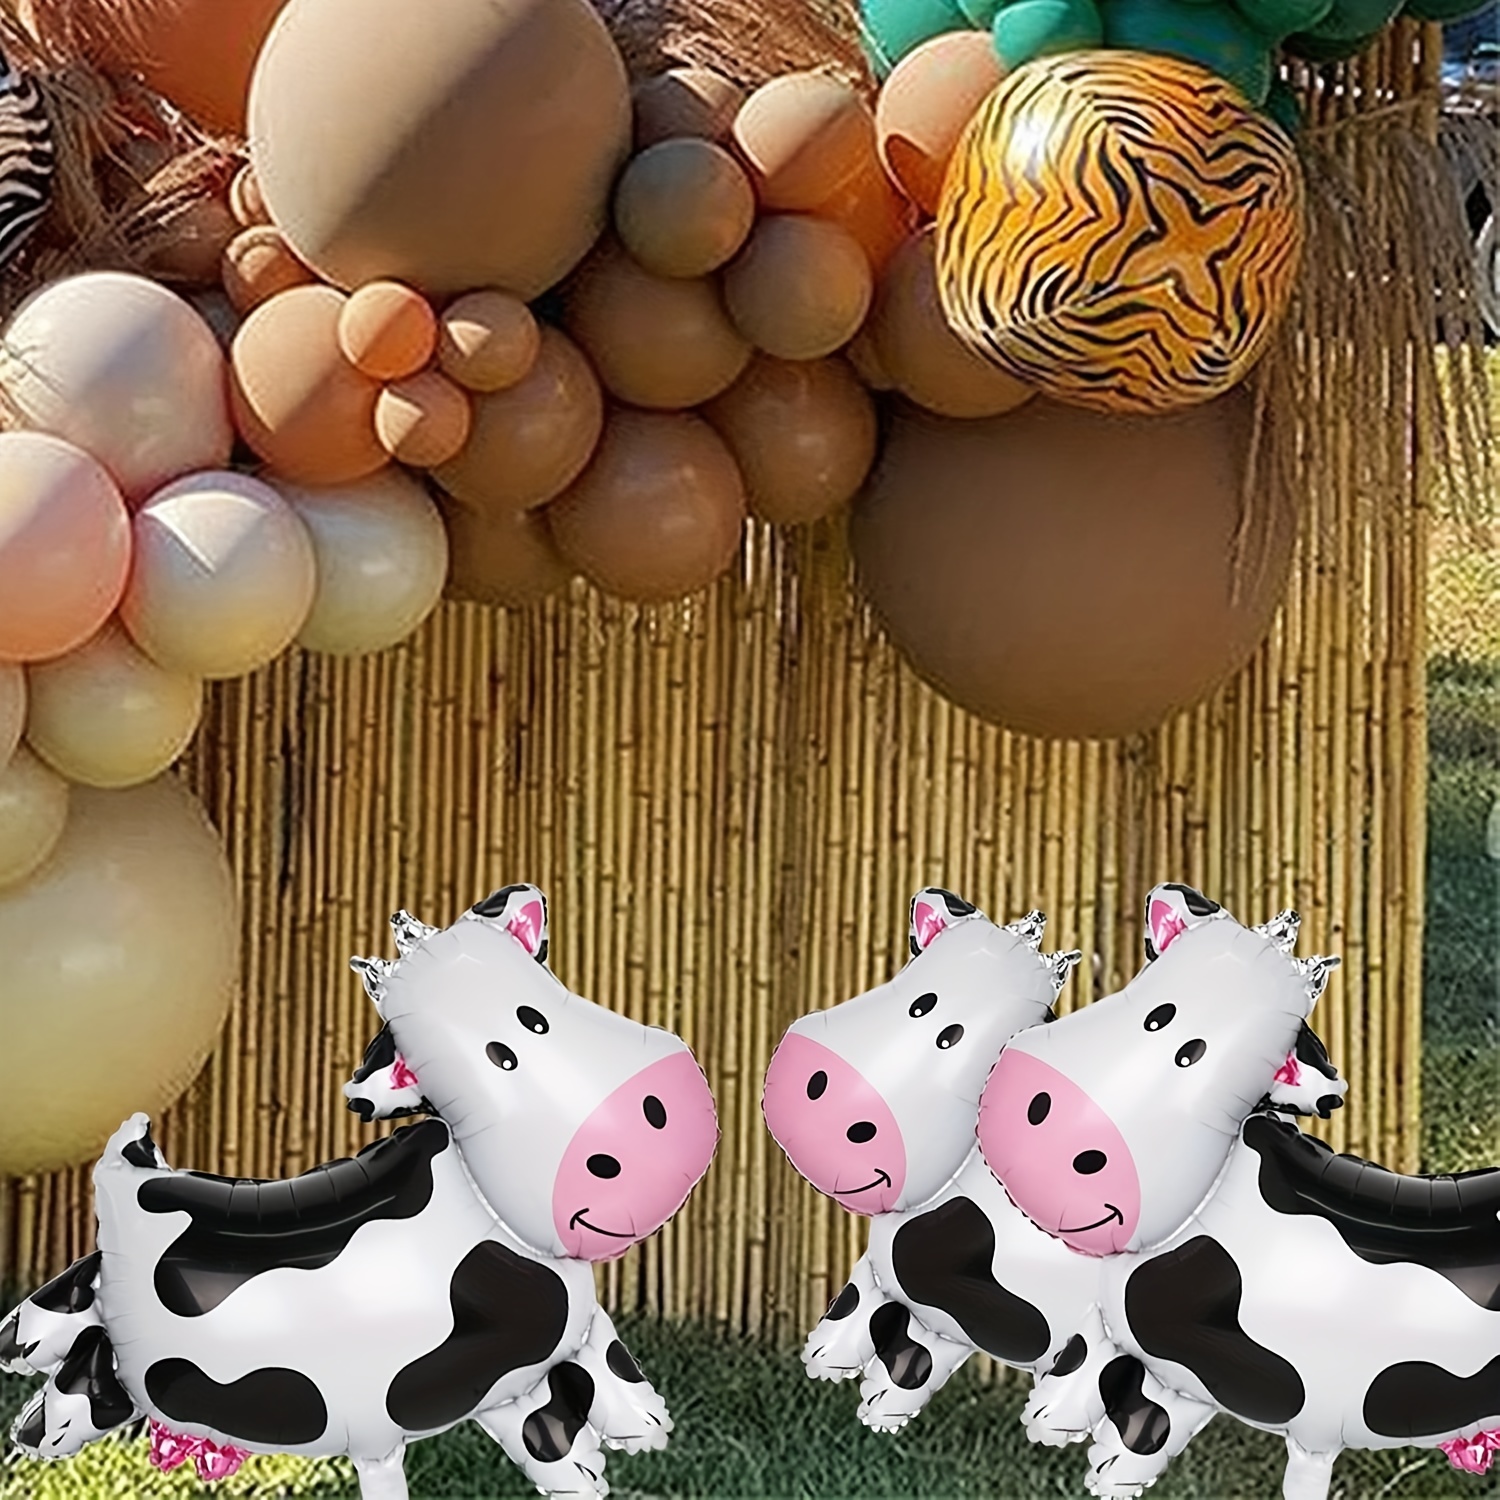 Globos de animales de granja decoraciones de cumpleaños de granja